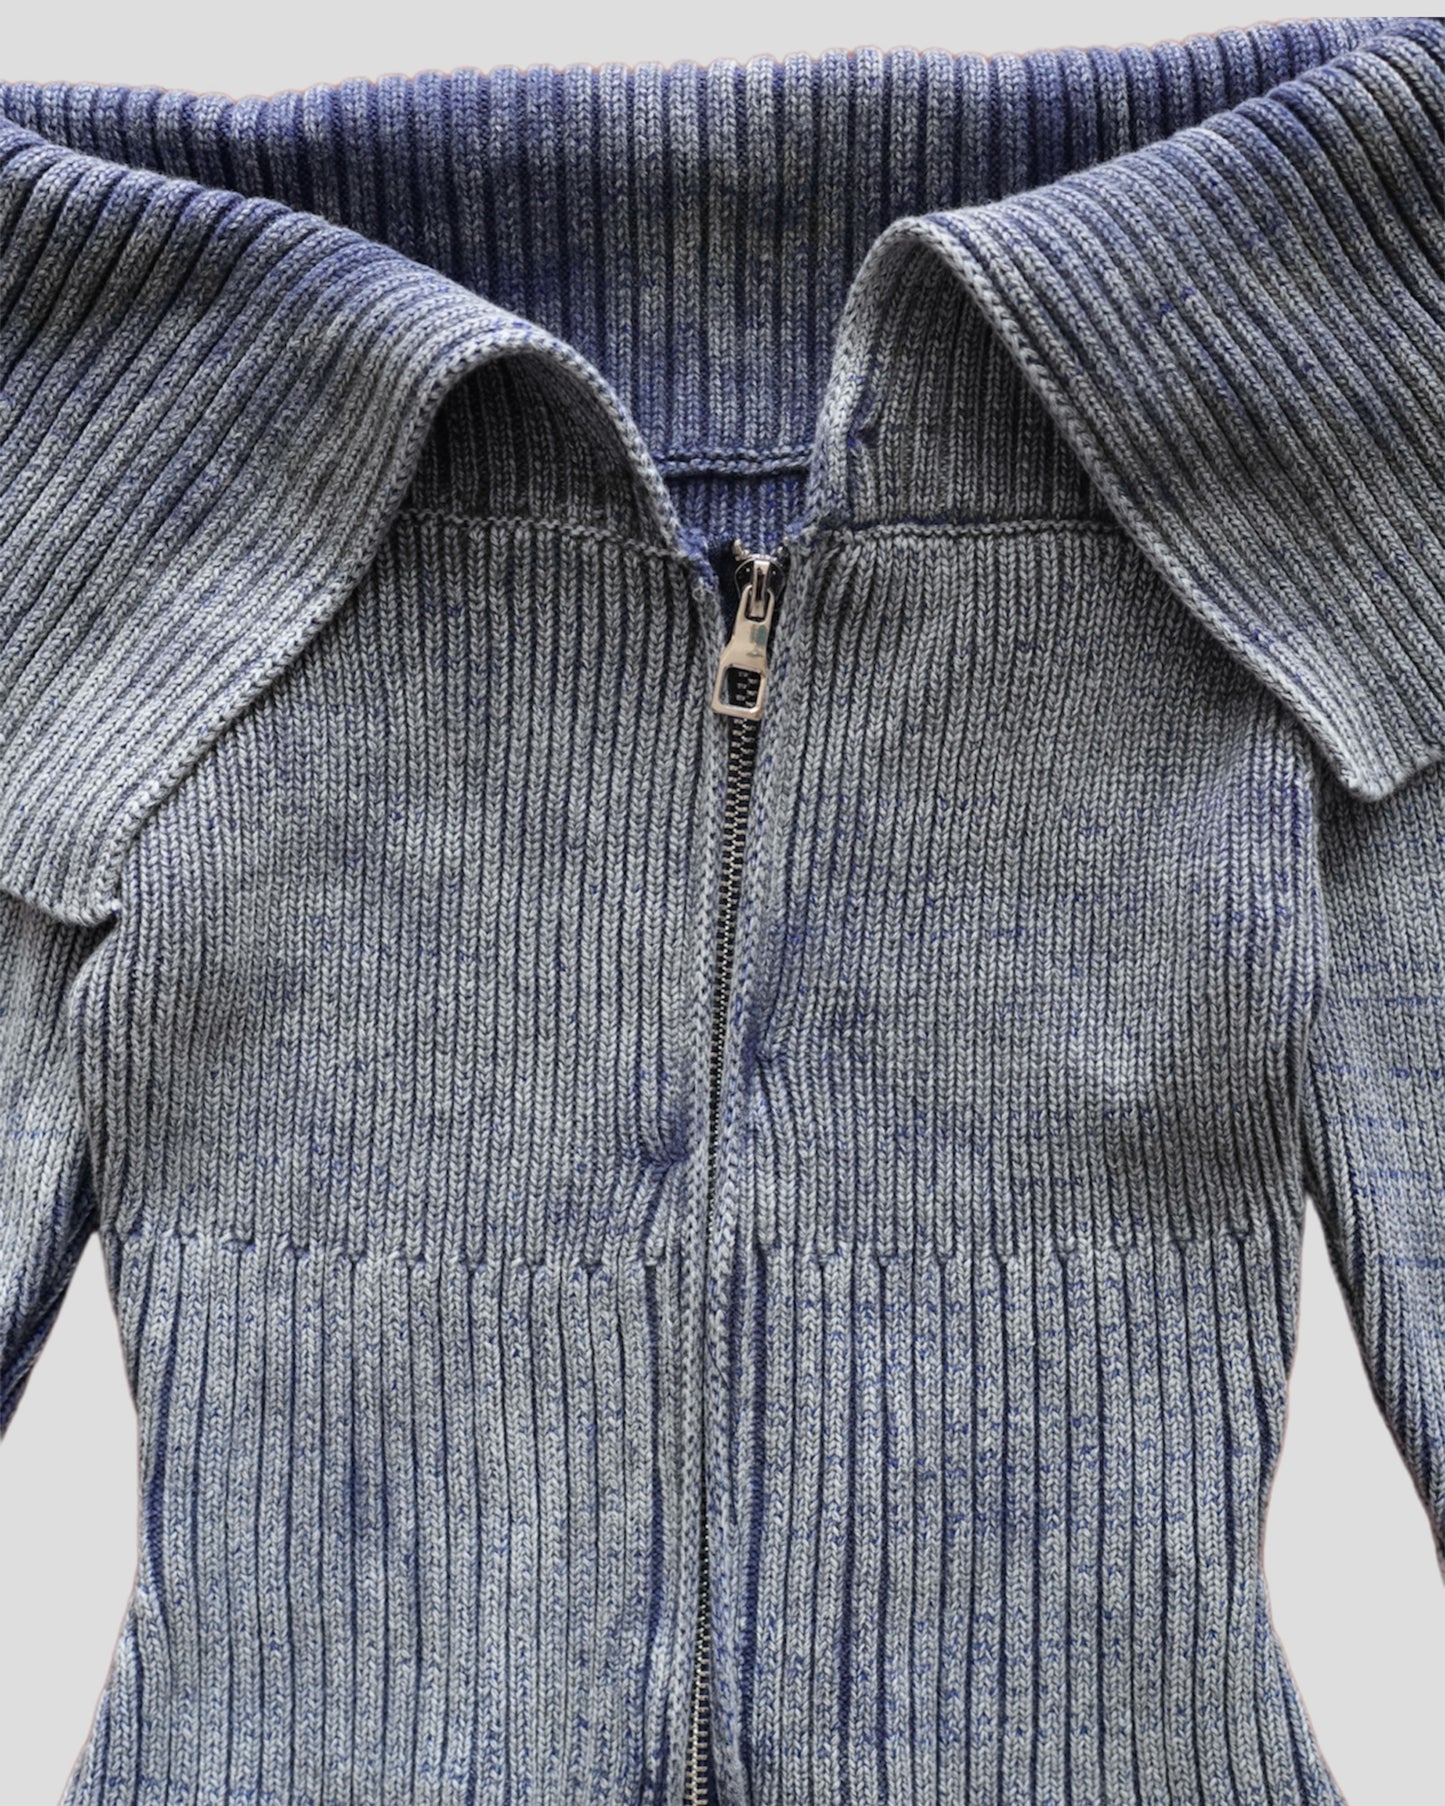 Washed zip up off shoulder knit top